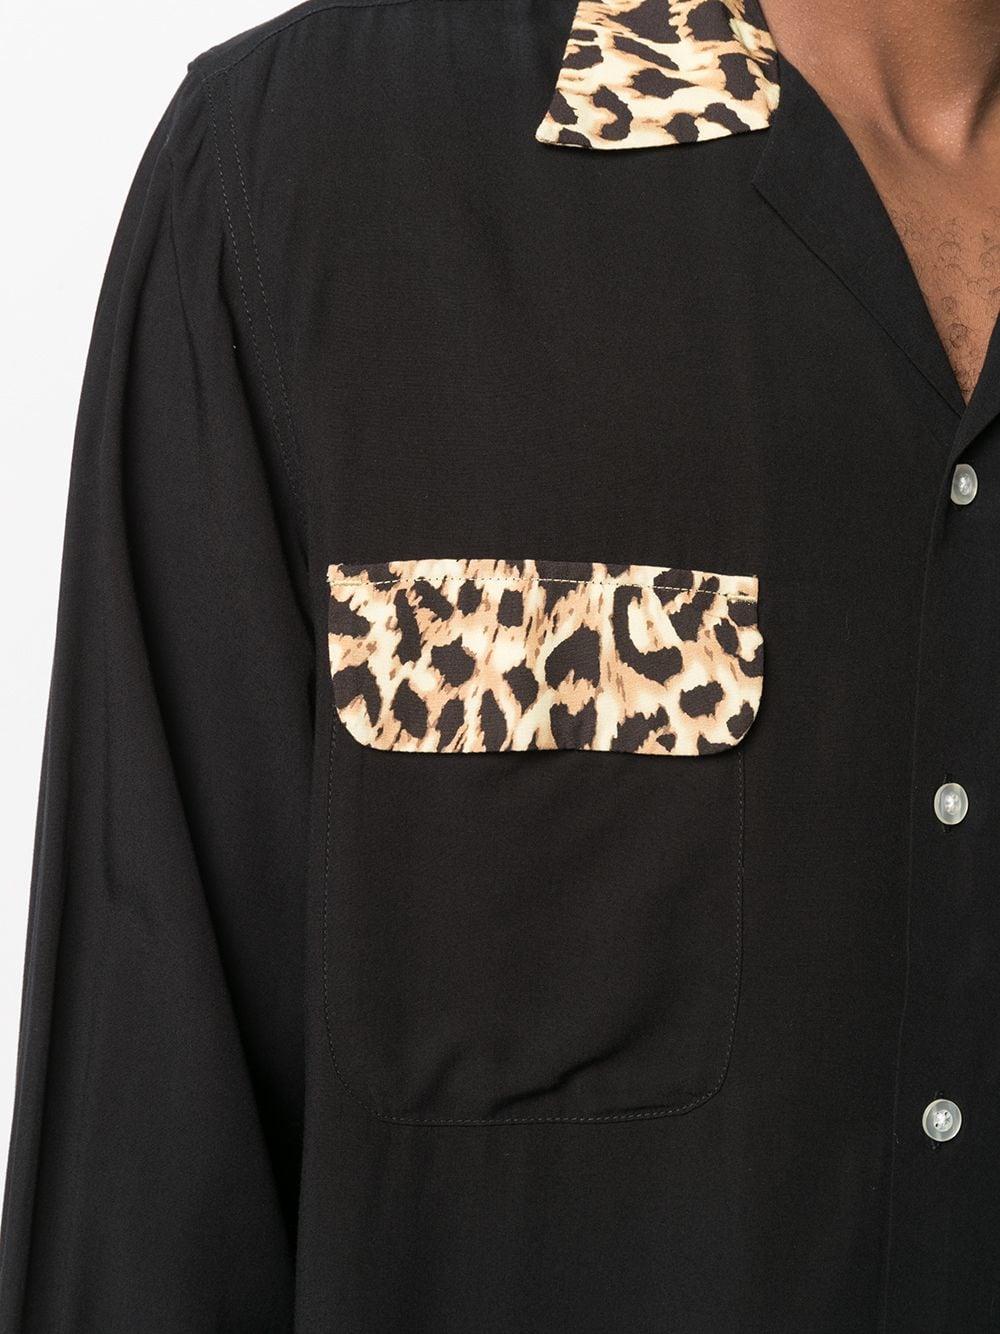 фото Carhartt wip рубашка с леопардовым принтом